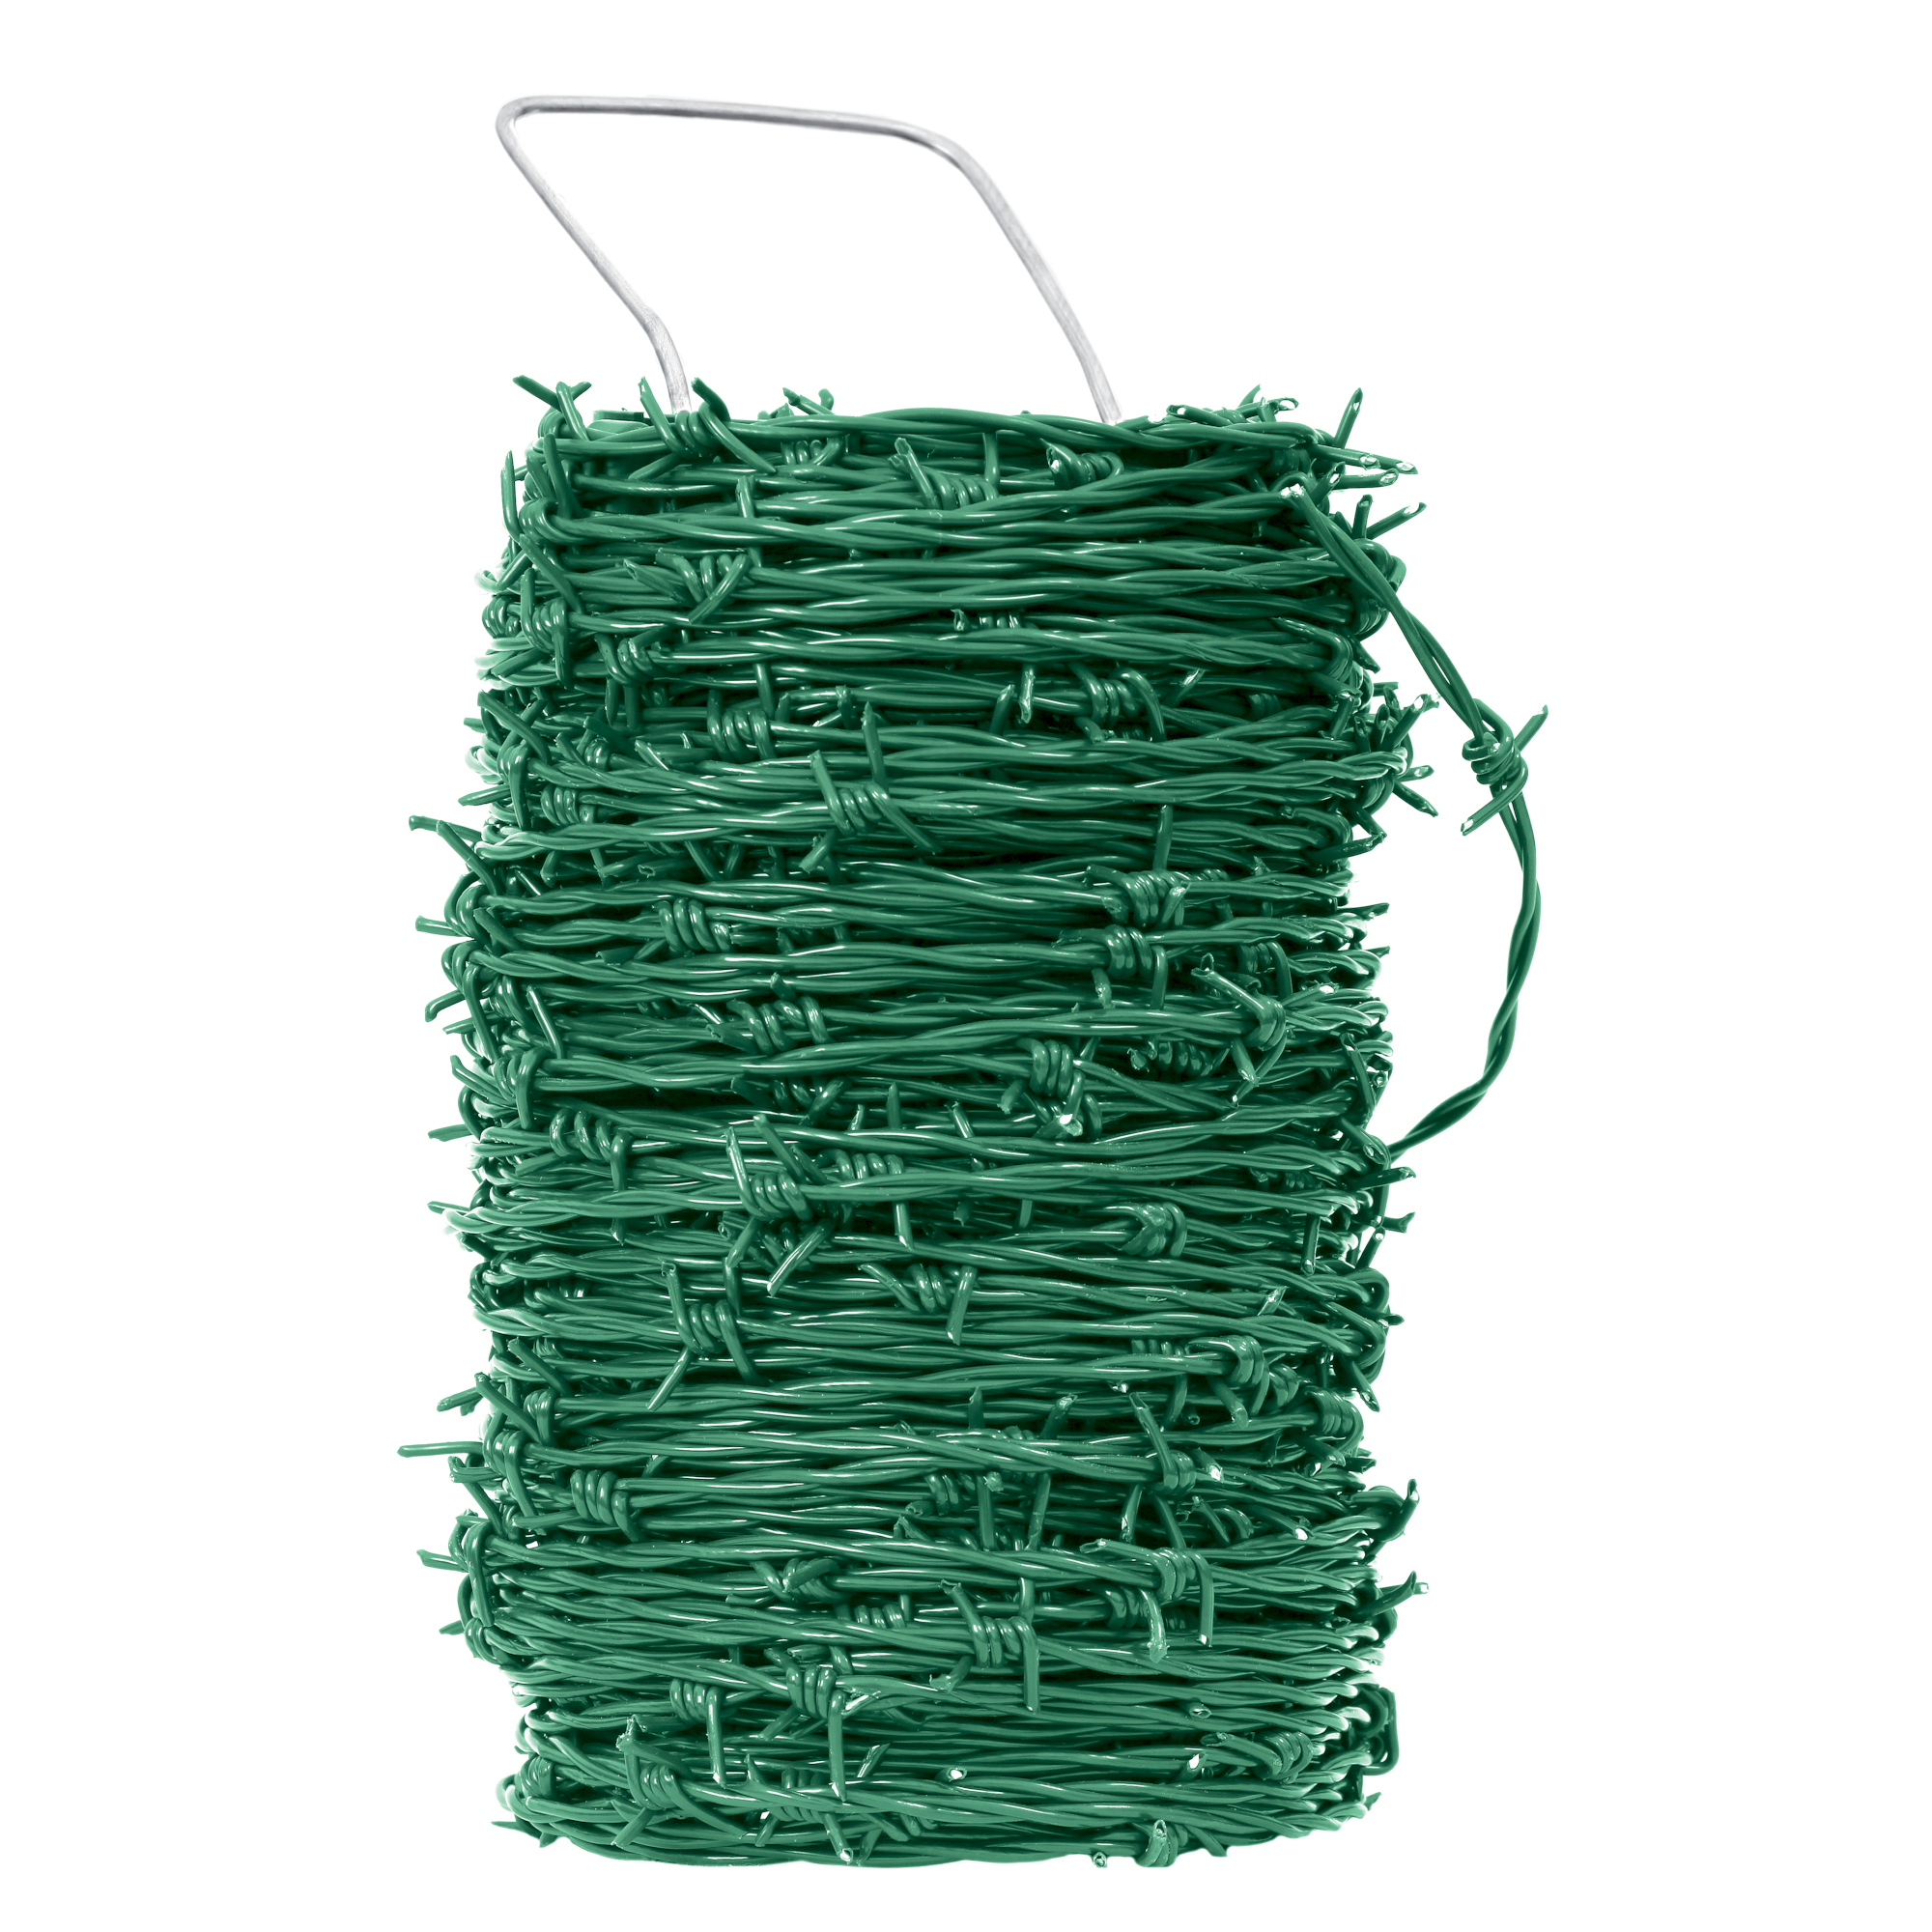 Drát ostnatý Pichláček Zn + PVC zelený 100 m Pilecký